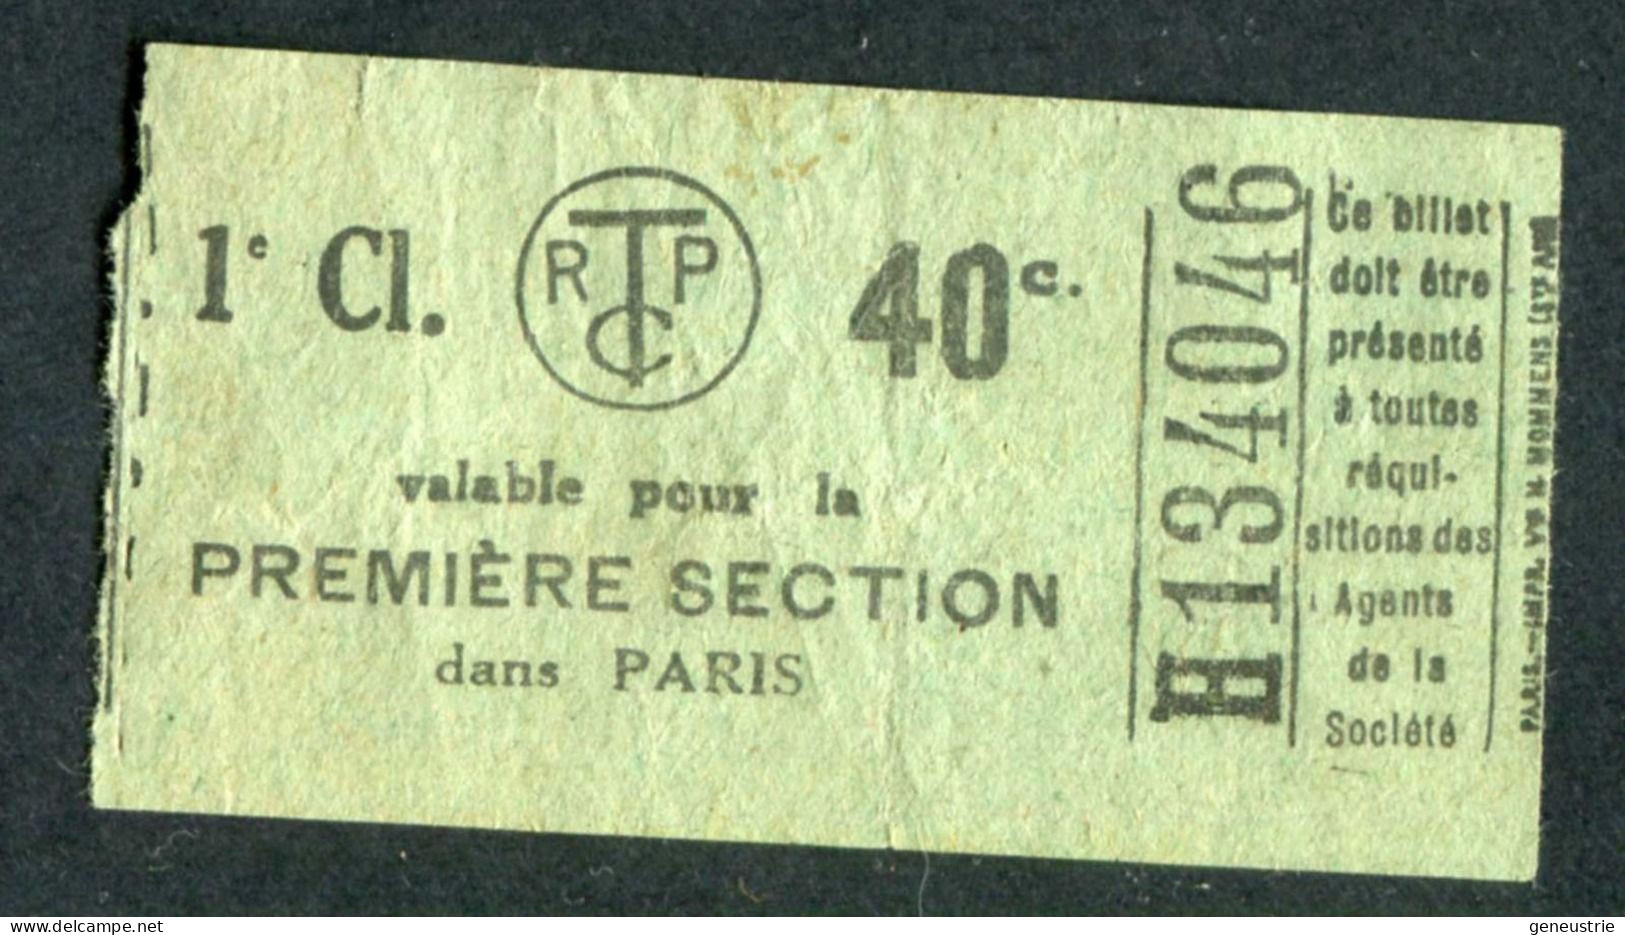 Ticket De Tramways Parisiens 1921 à 1938 (STCRP) 1e Classe 40c - Paris" Chemin De Fer - Tramway - Tram - Europa